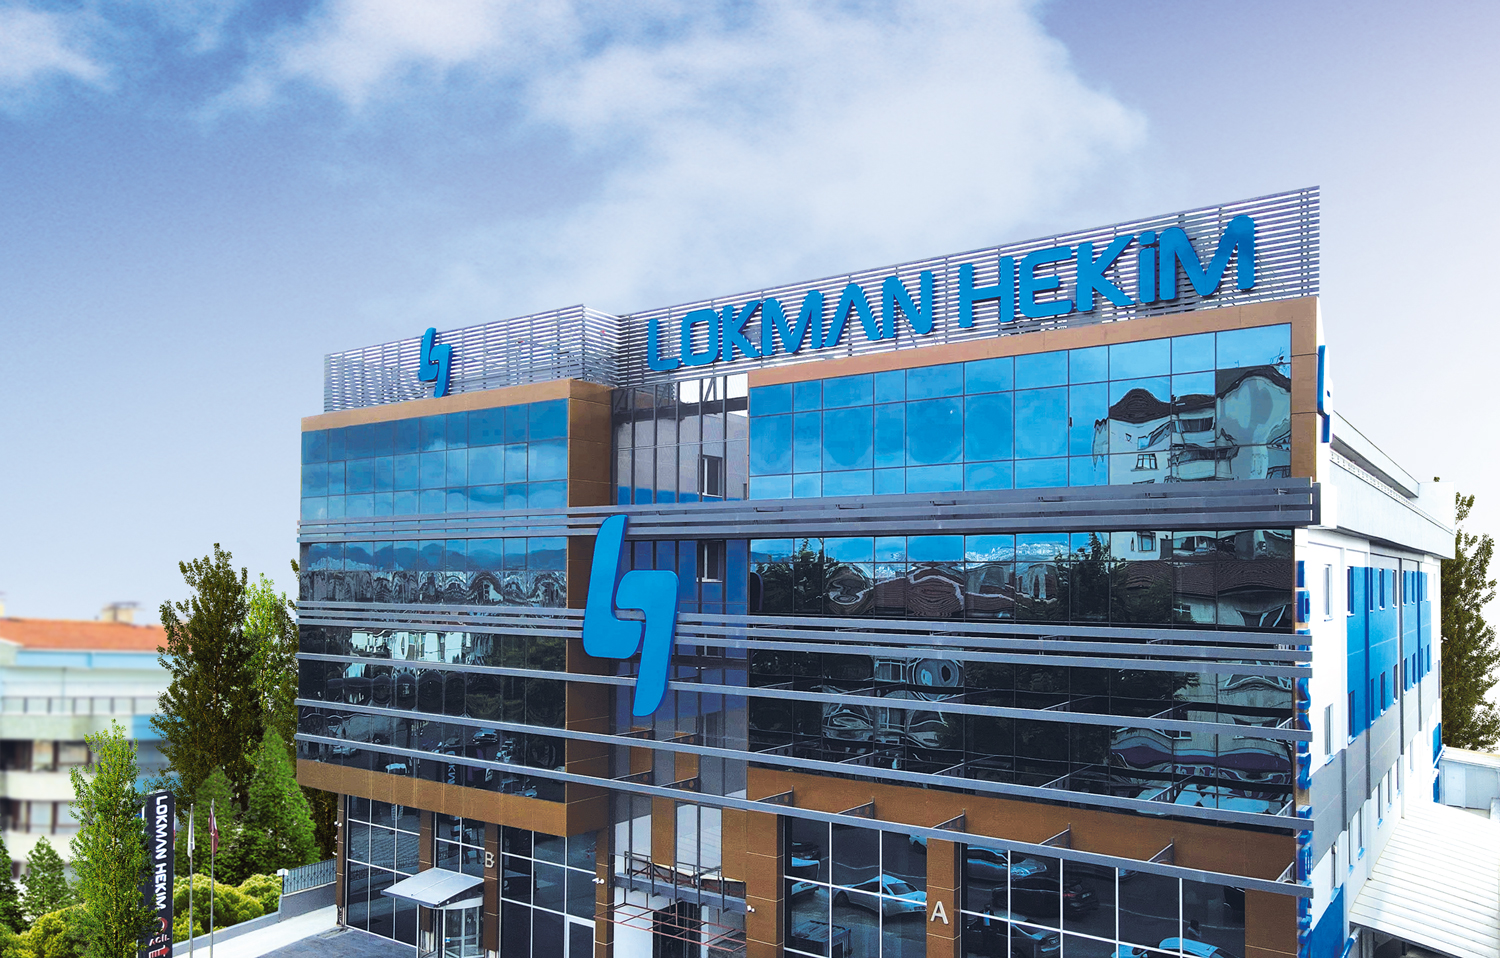 2 kurum Lokman Hekim için hedef fiyatlarını açıkladı HİSSE HEDEF FİYAT Rota Borsa